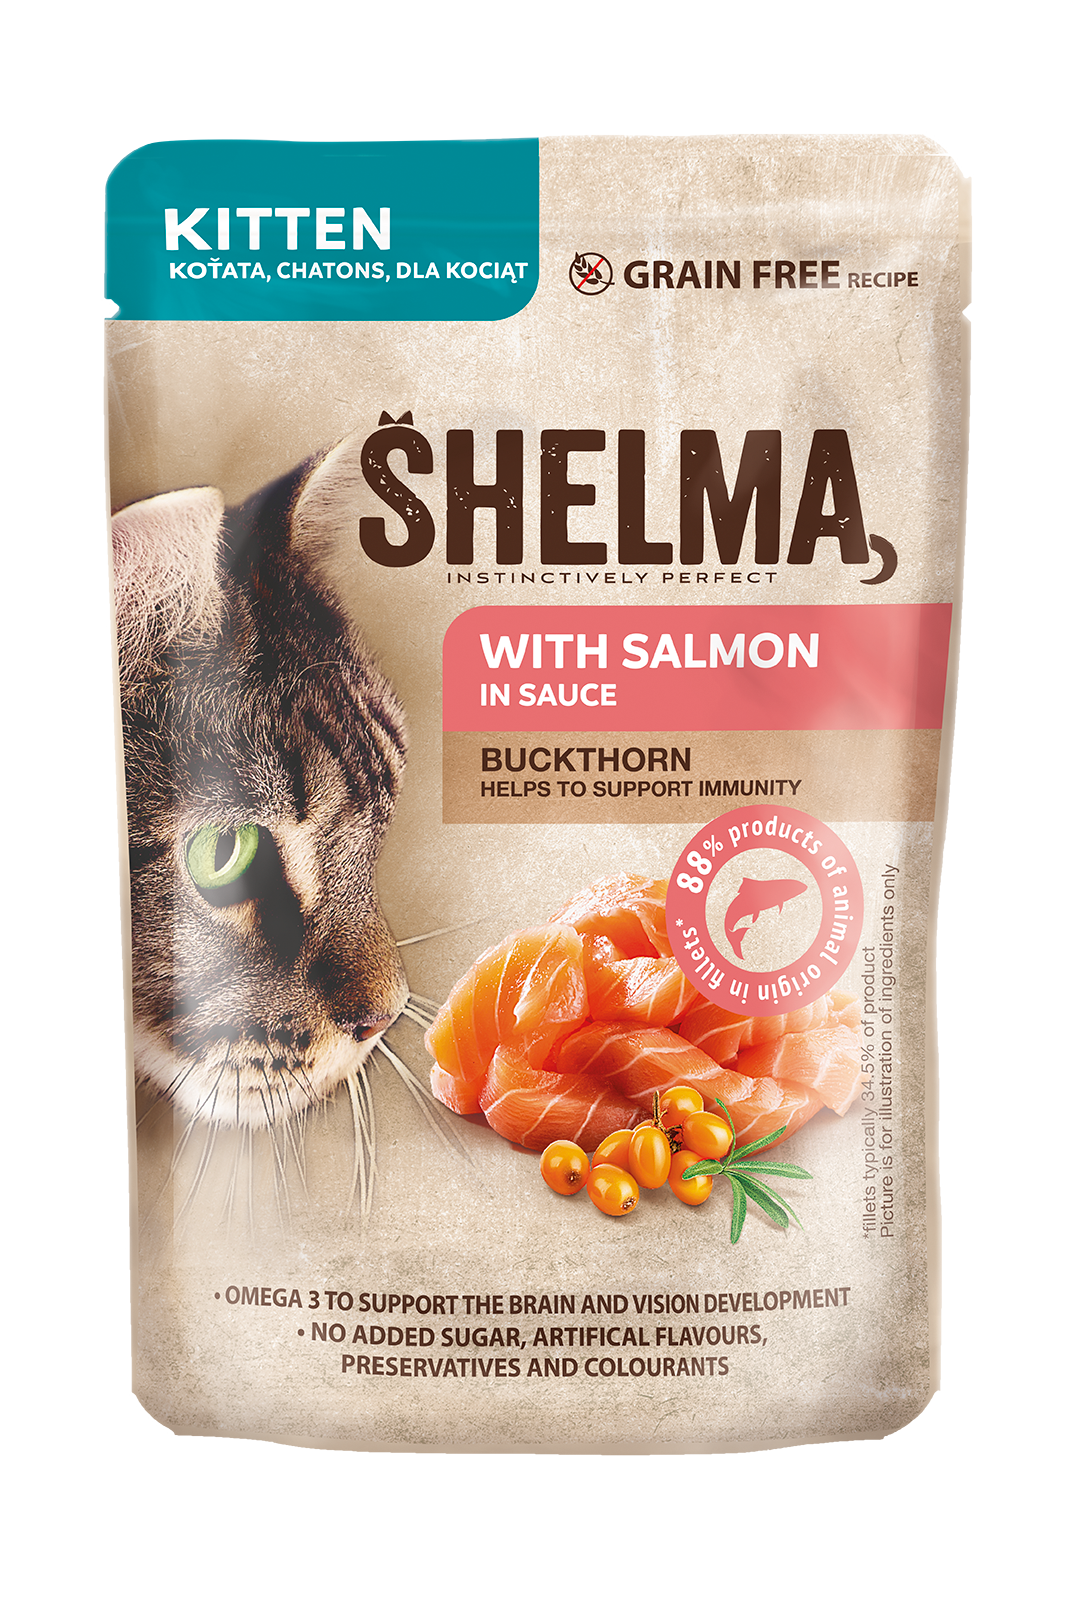 Nourriture pour chat Shelma - nourriture pour chaton riche en dinde fraîche  - 5 x 750g